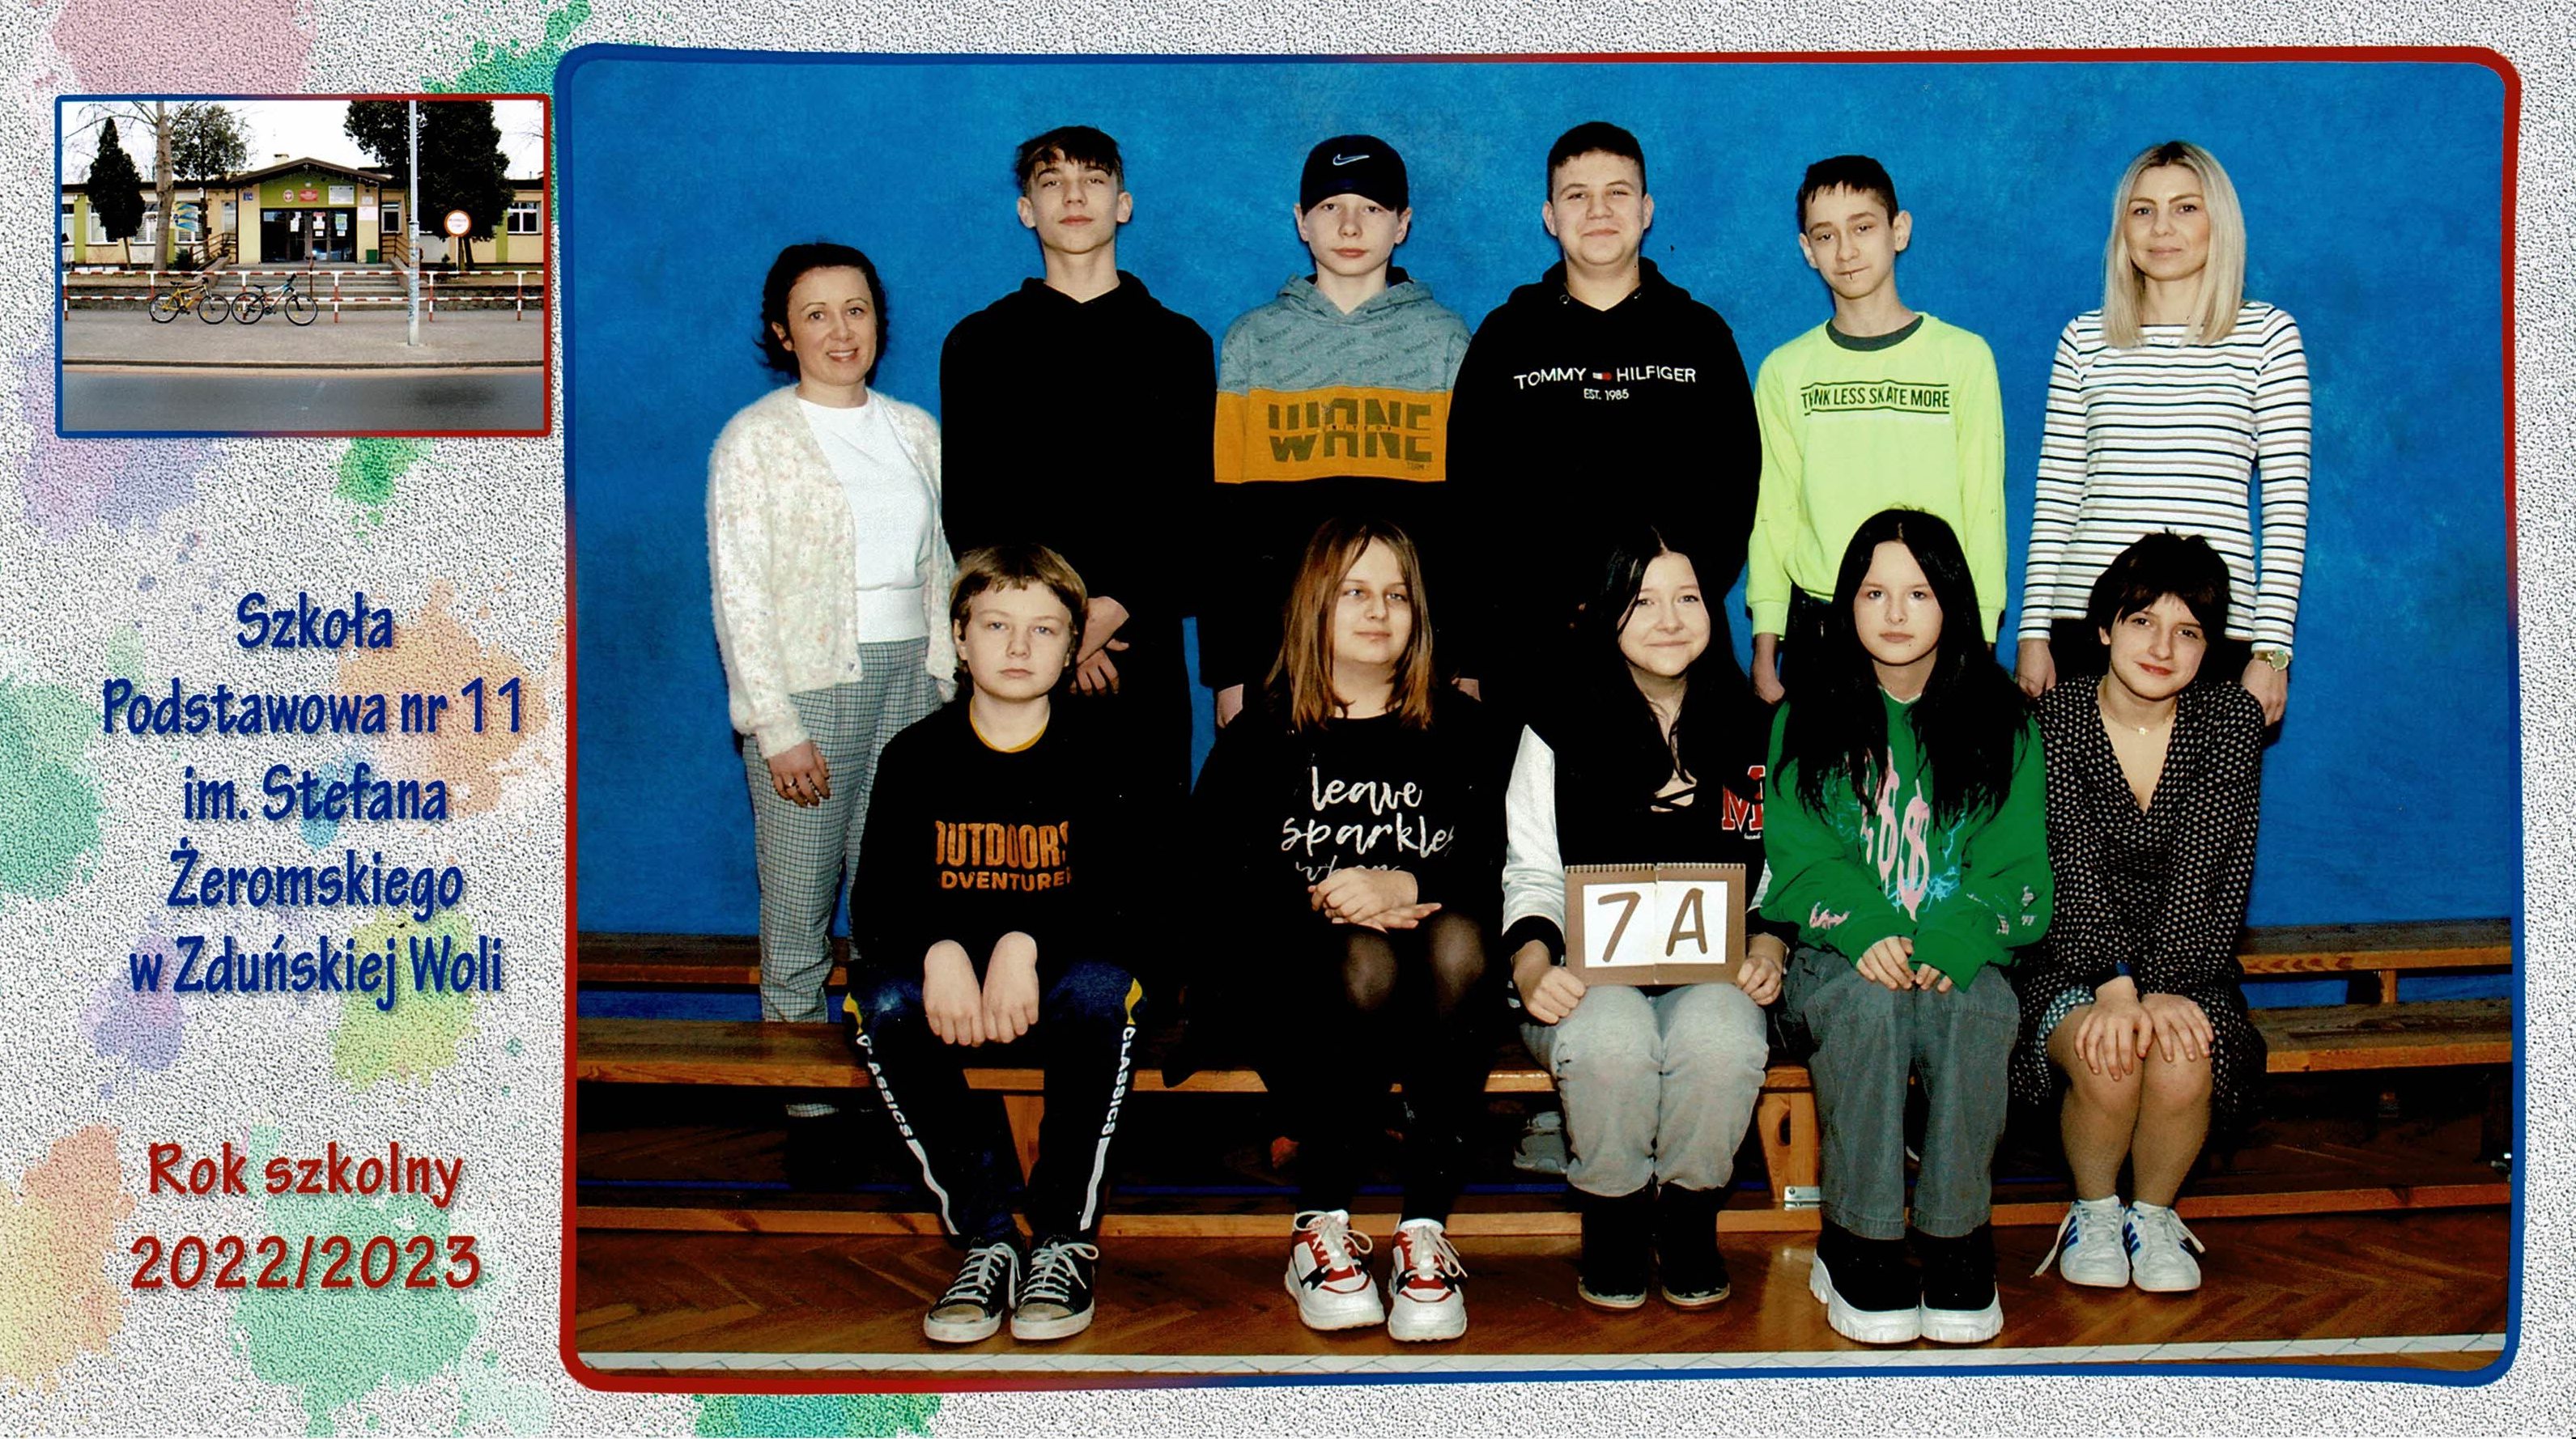 Uczniowie klasy 7A, dziewczynki i chłopcy siedzący na ławce z tabliczką "klasa 7a"